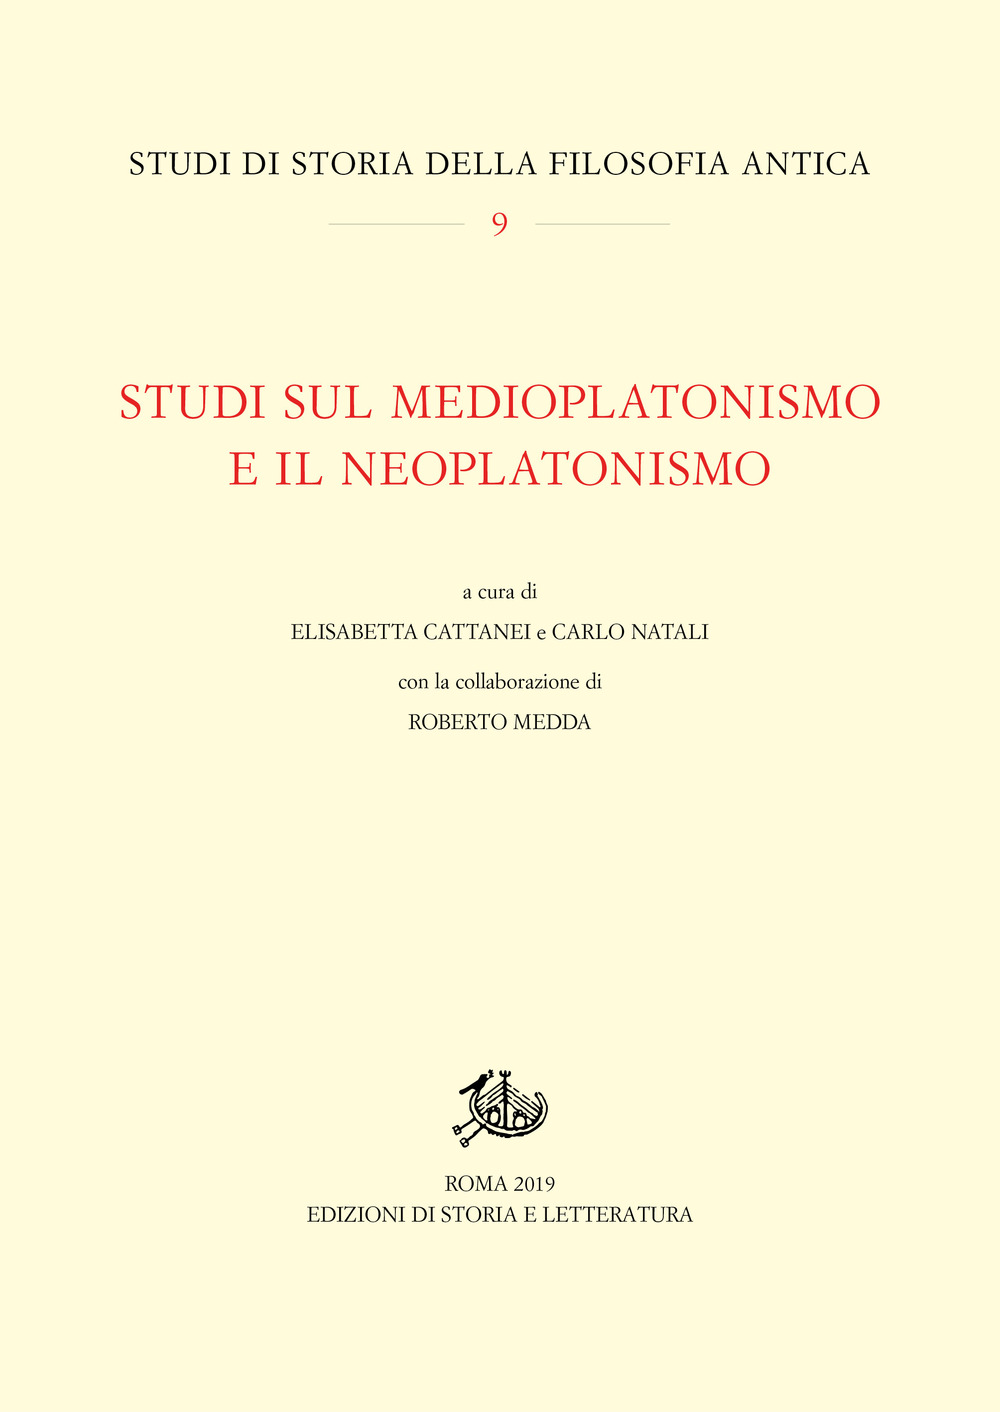 Studi sul medioplatonismo e il neoplatonismo